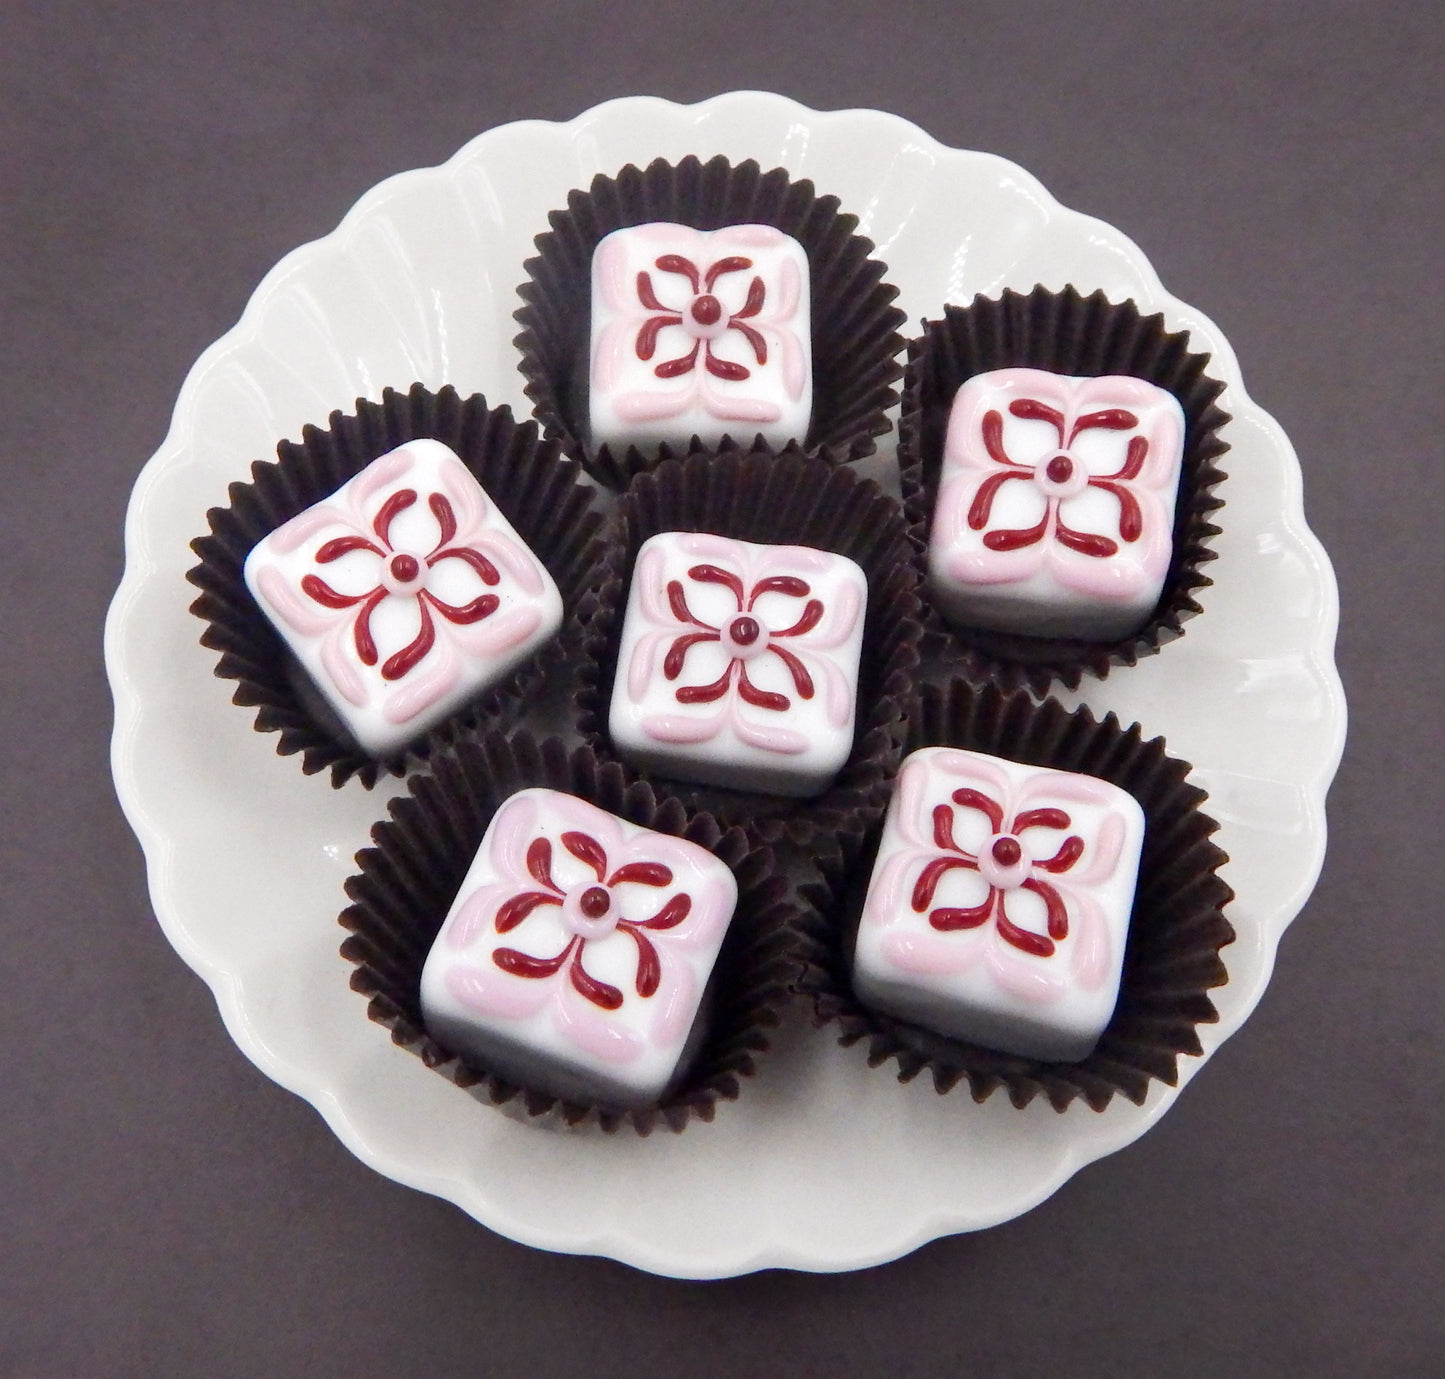 White Chocolate Treat with Strawberry & Cherry Design (18-060WSH)